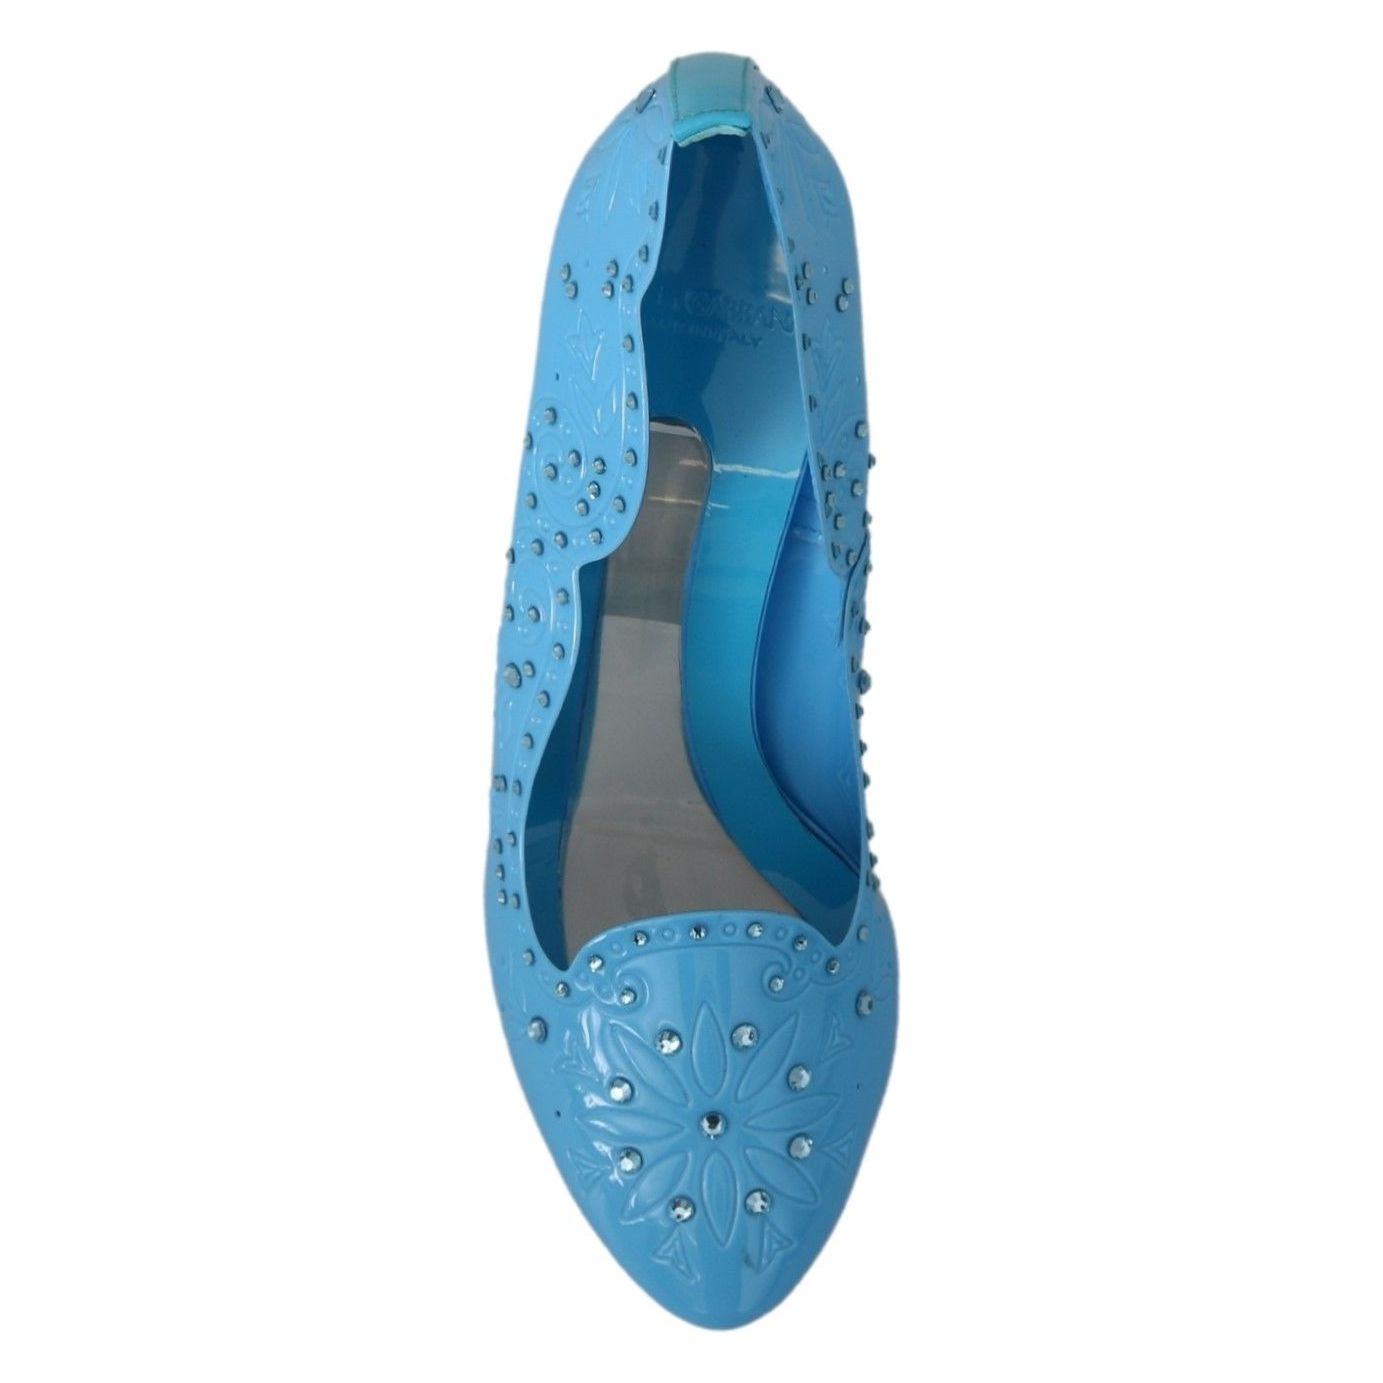 Dolce & Gabbana Crystal Embellished Blue Cinderella Pumps blue-crystal-floral-cinderella-heels-shoes